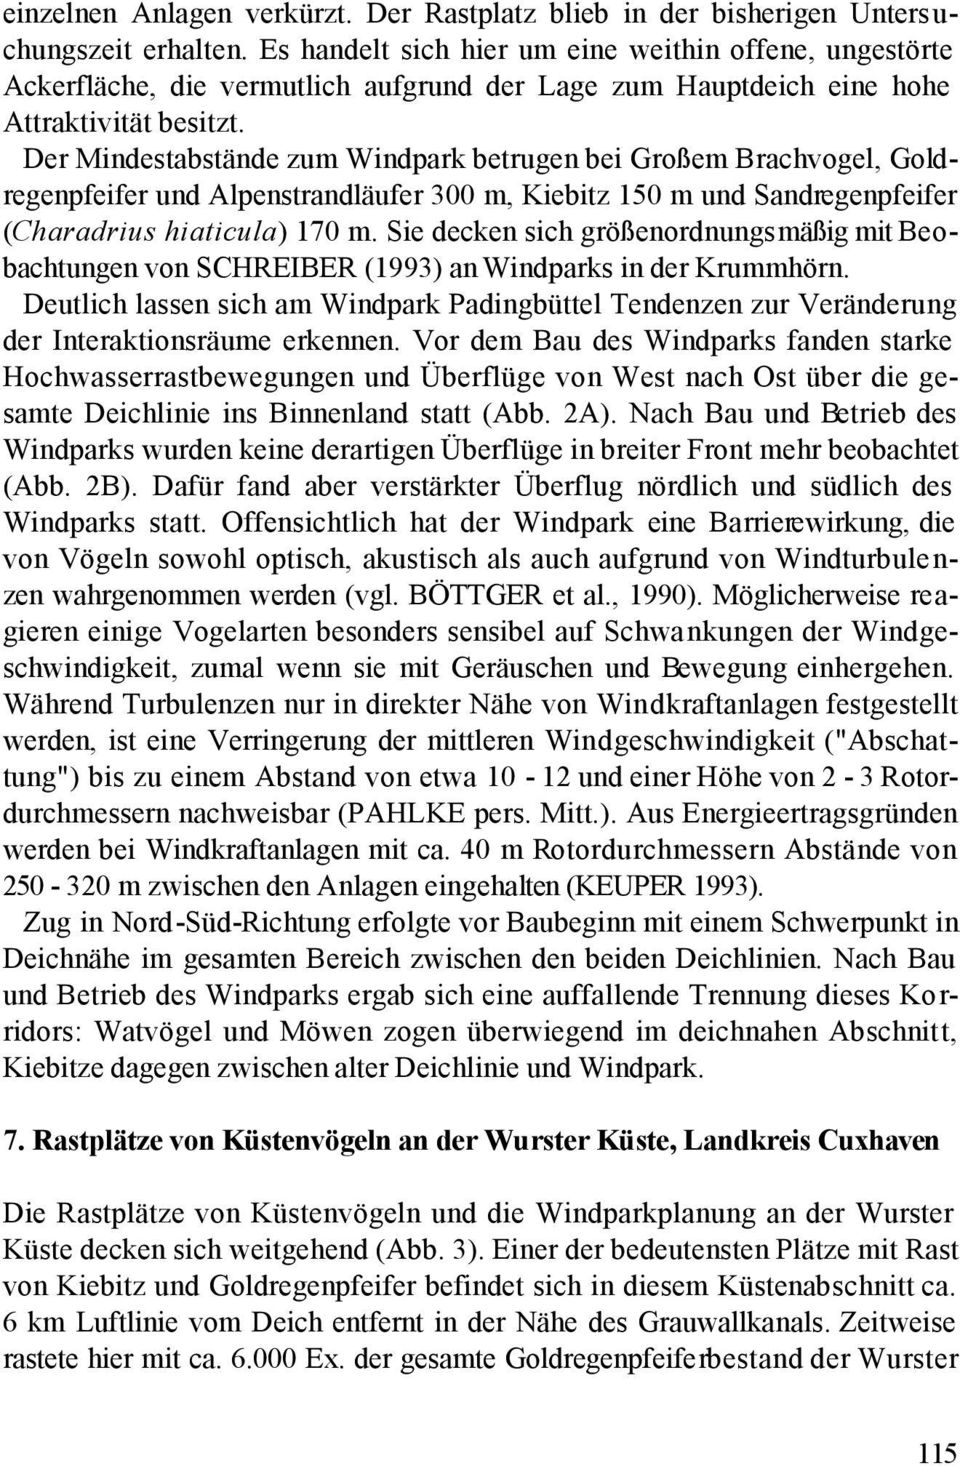 Der Mindestabstände zum Windpark betrugen bei Großem Brachvogel, Goldregenpfeifer und Alpenstrandläufer 300 m, Kiebitz 150 m und Sandregenpfeifer (Charadrius hiaticula) 170 m.